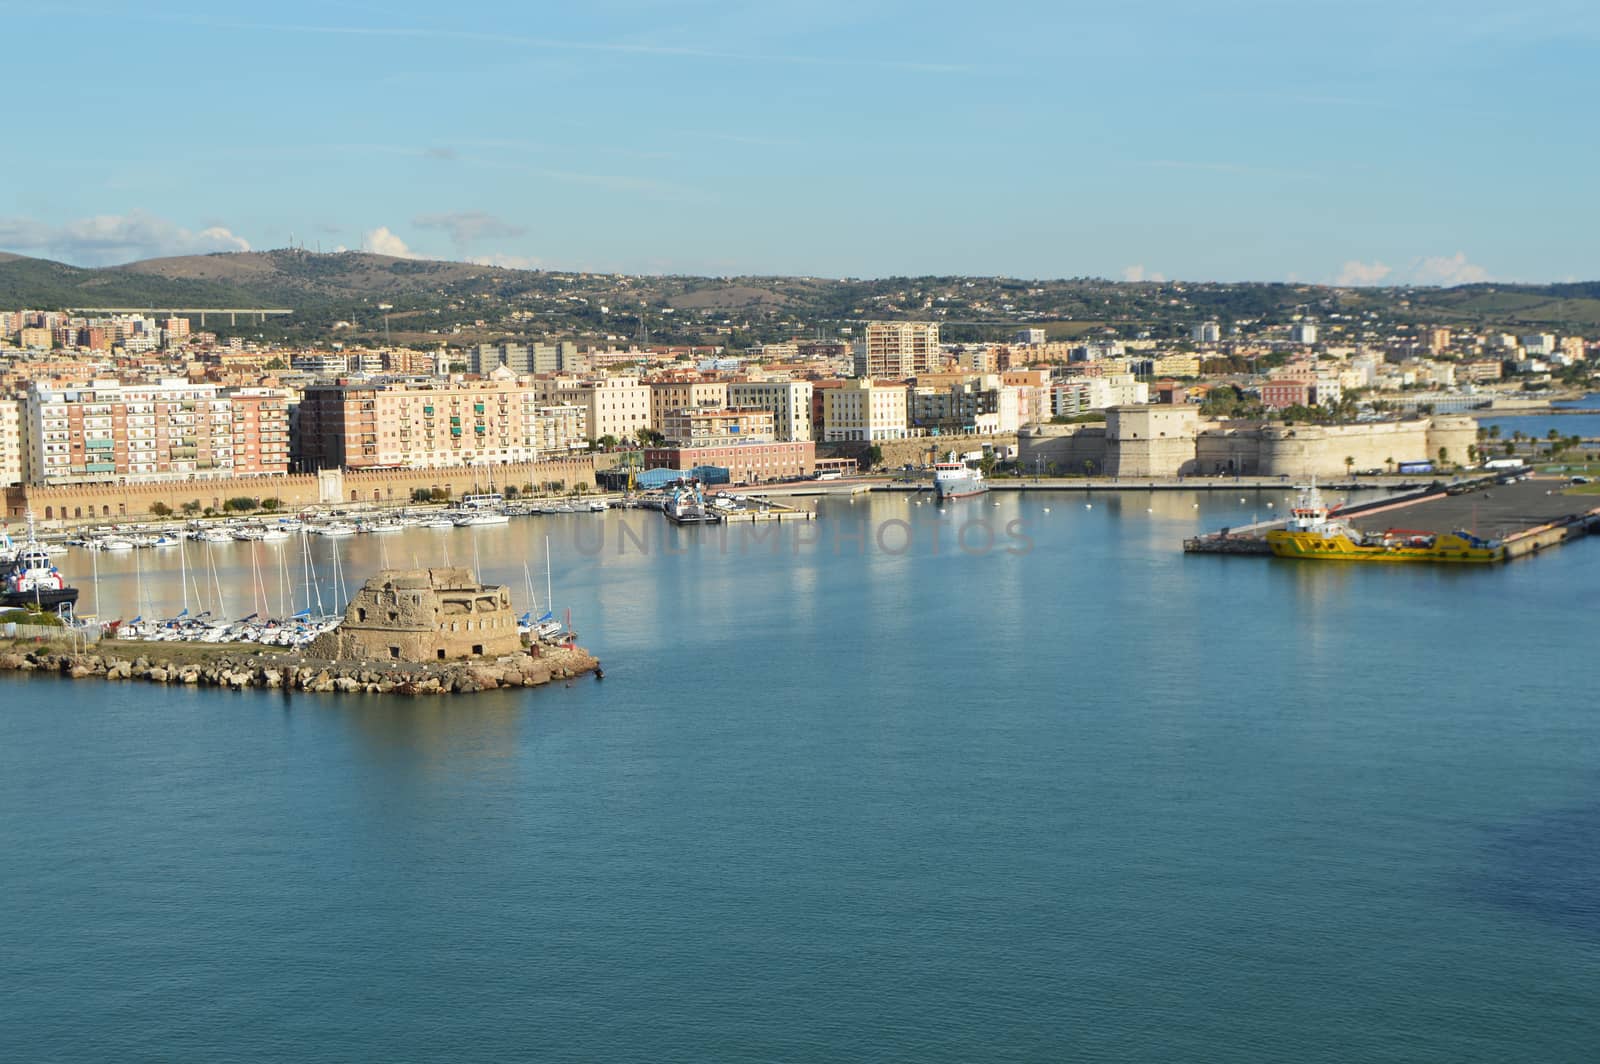 Panoramic view of Civitavecchia port, coast, port, buildings, October 7, 2018.